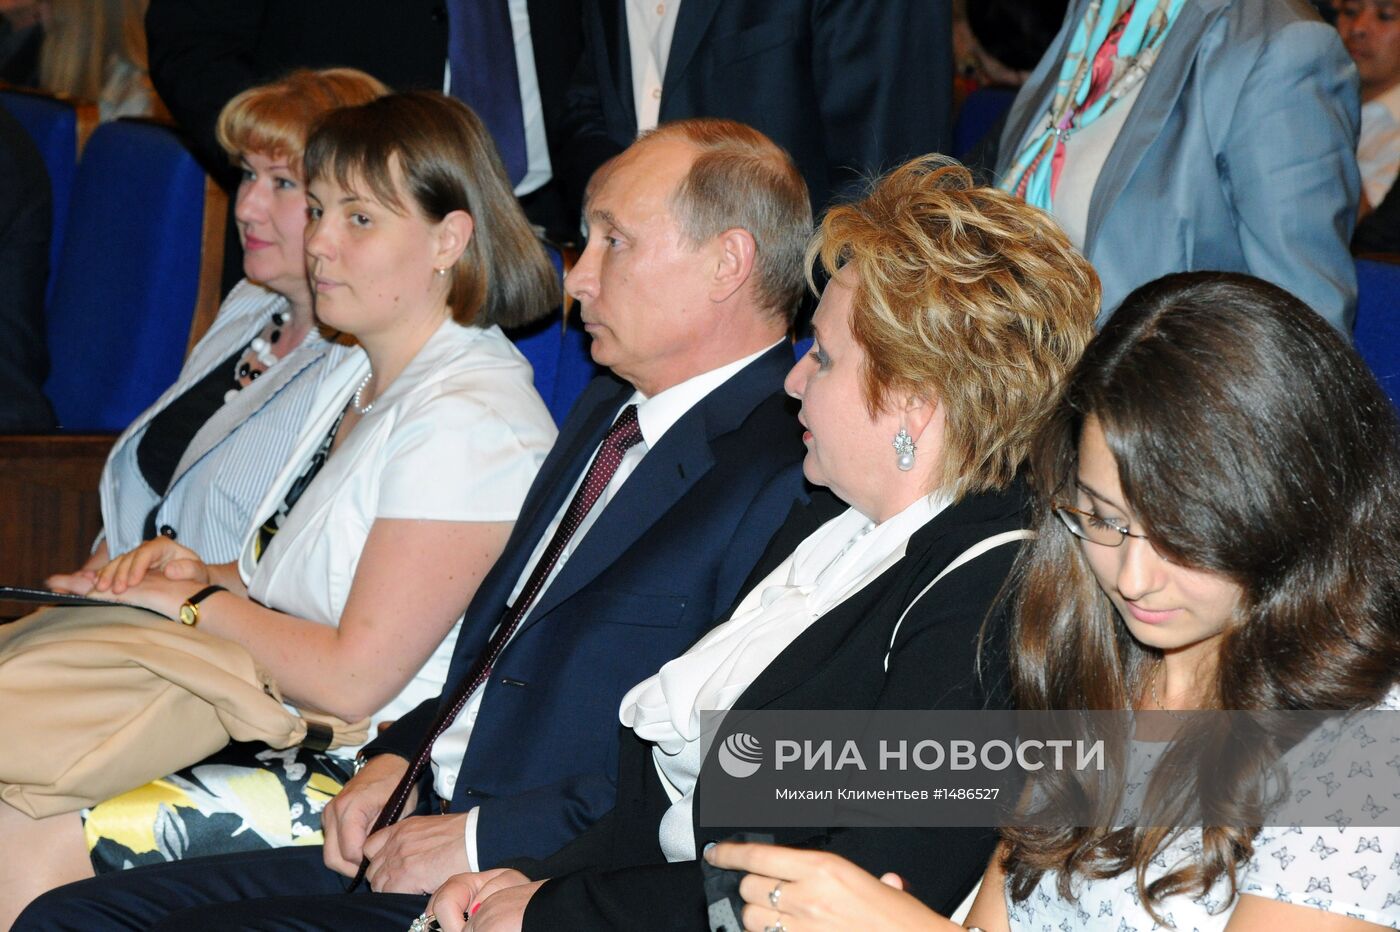 В.Путин с супругой посетили балет "Эсмеральда" в ГКД